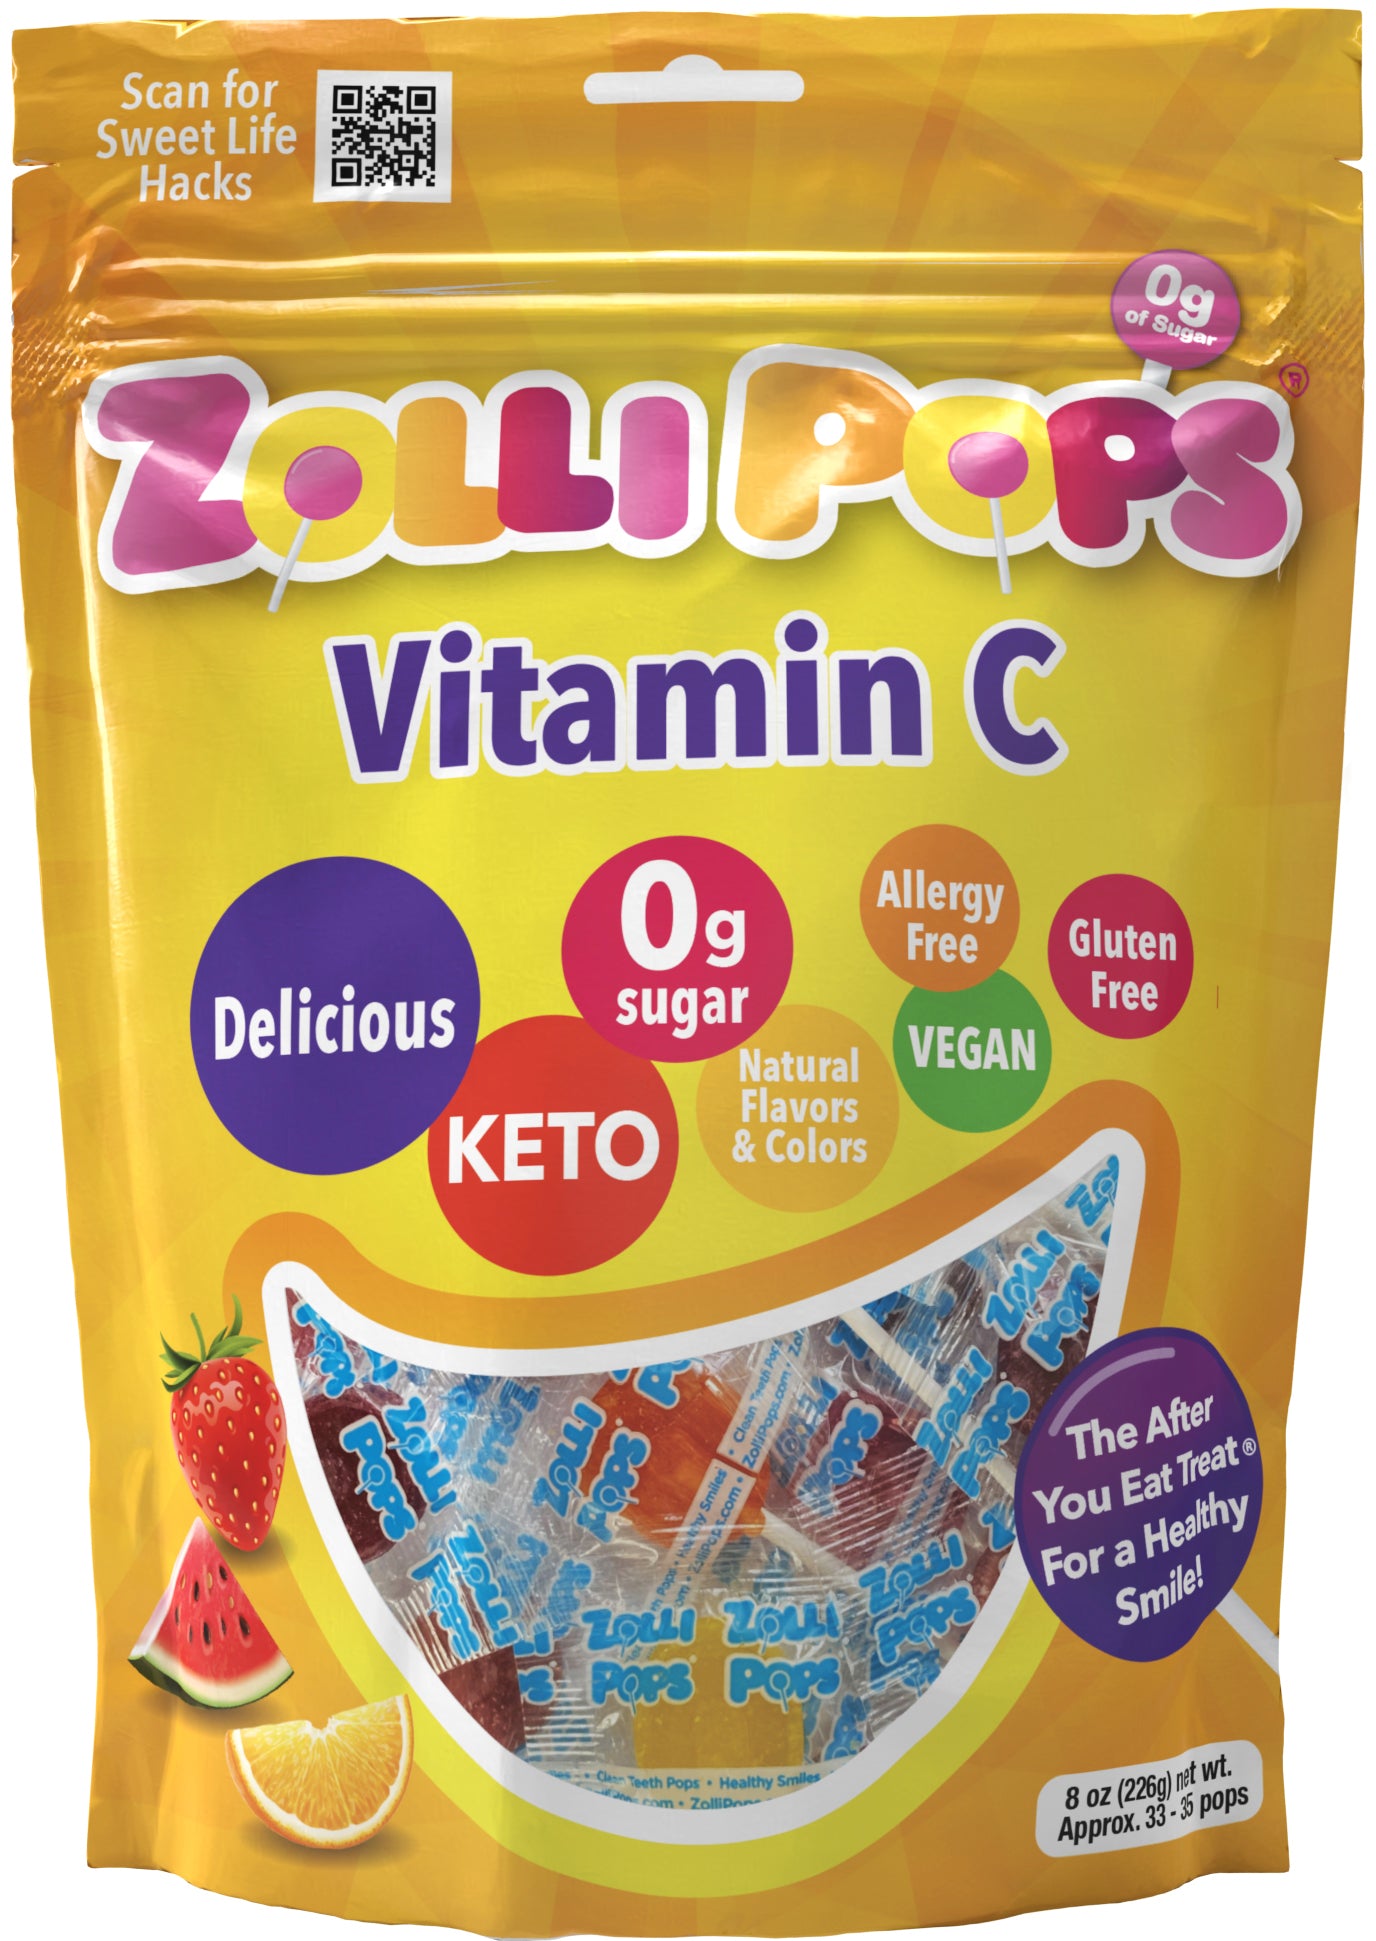 Zollipops Vitamin C Bag Front